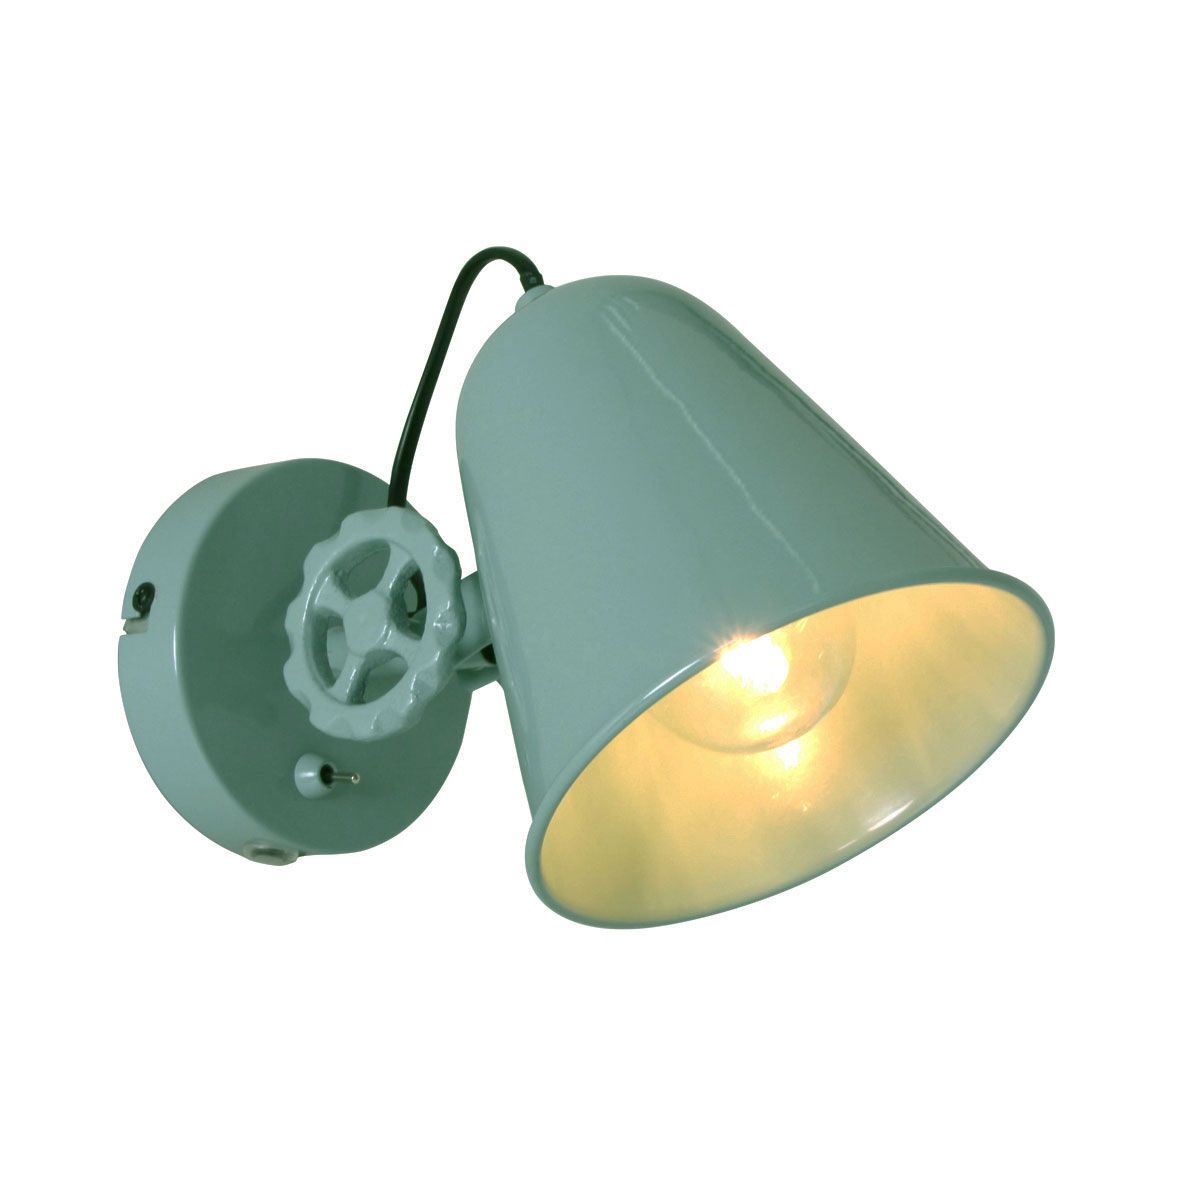 Billede af Fabriza - væglampe i industridesign med to farvemuligheder Metal - grøn